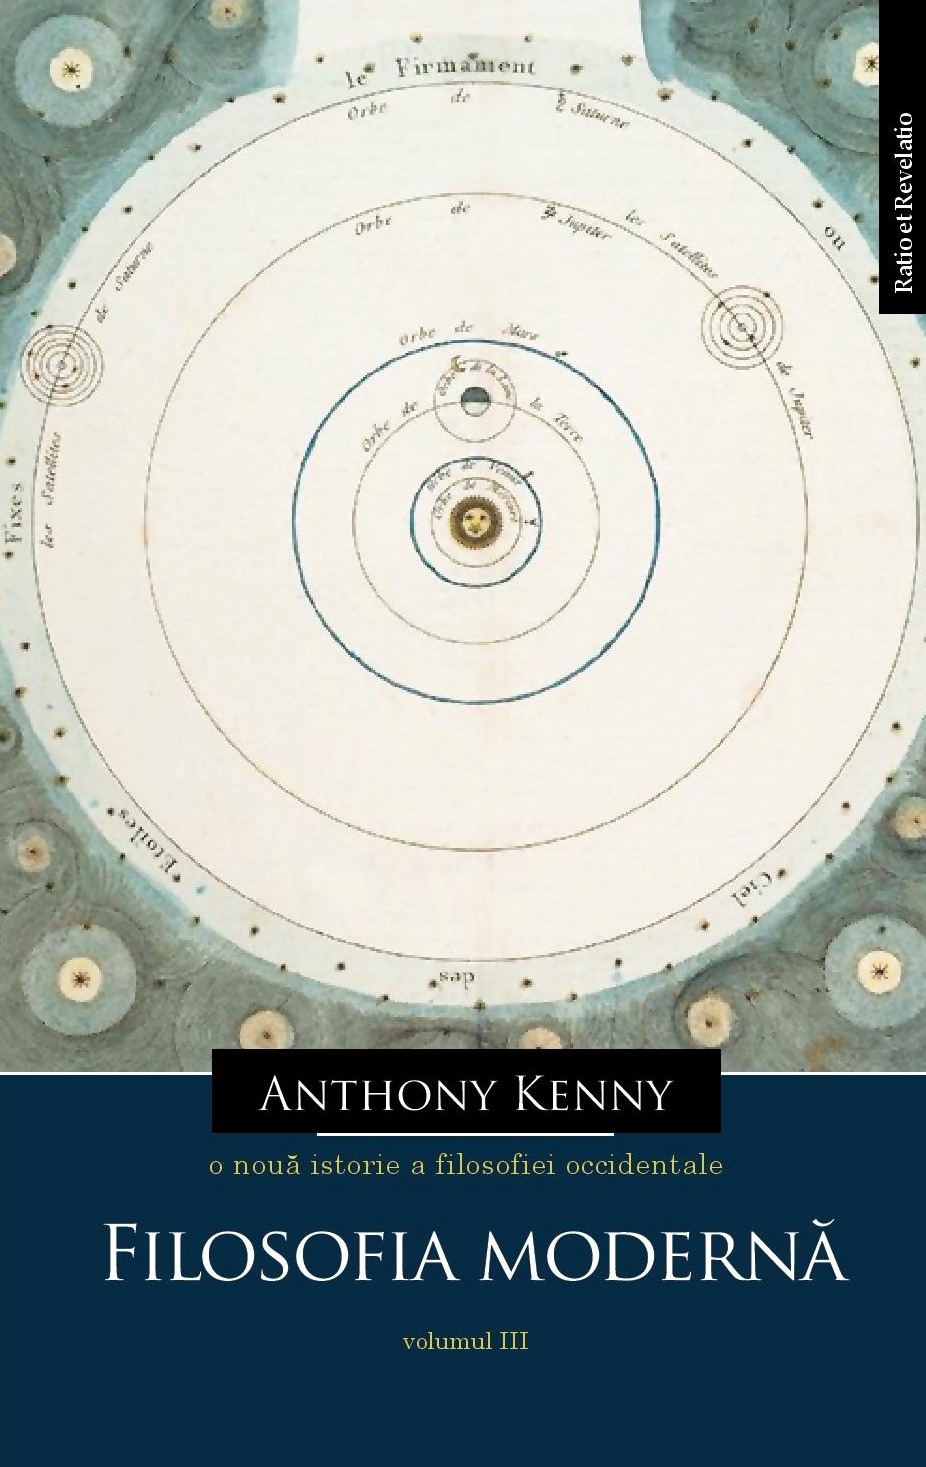 O noua istorie a filosofiei occidentale, volumul III | Anthony Kenny carturesti.ro imagine 2022